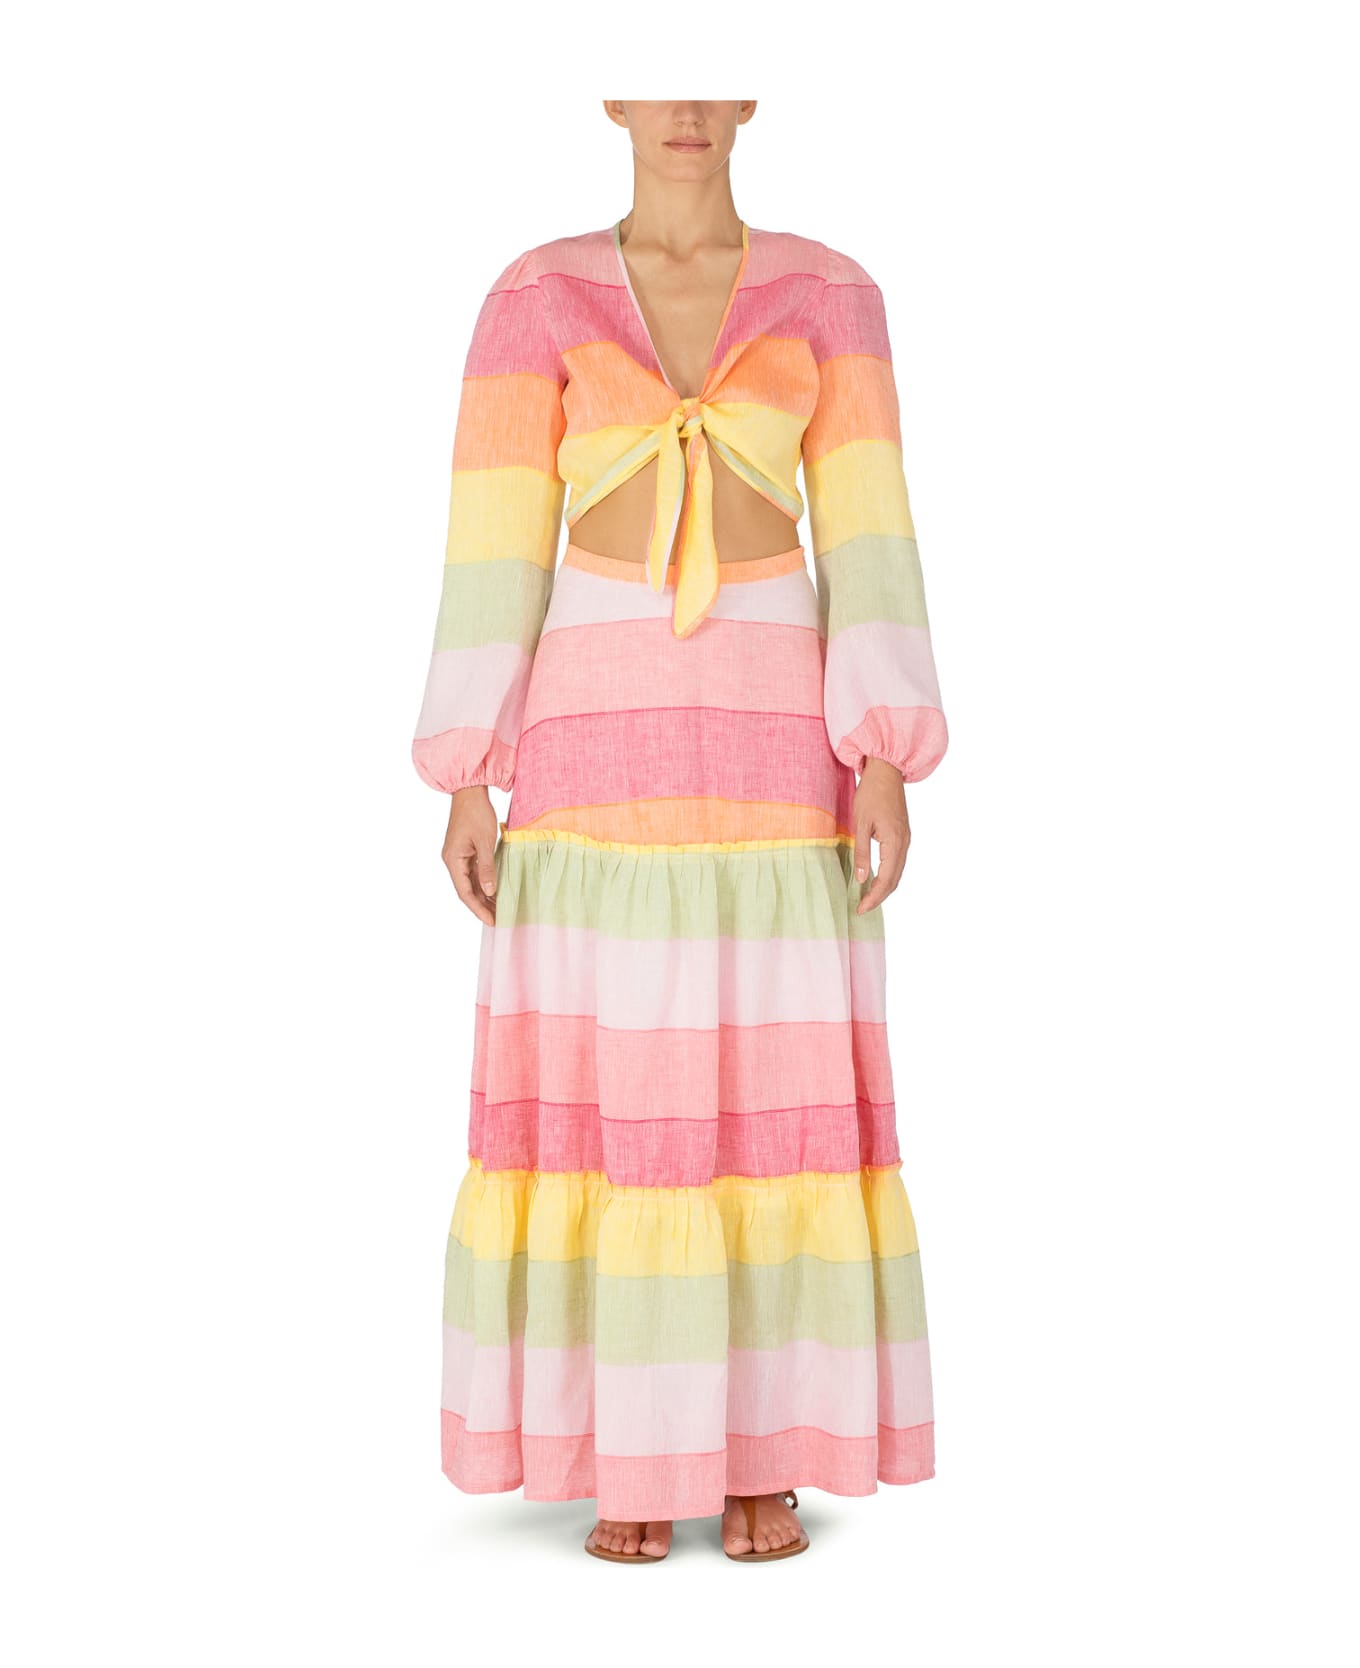 Amotea Charlotte Skirt In Rainbow Linen - Rainbow スカート